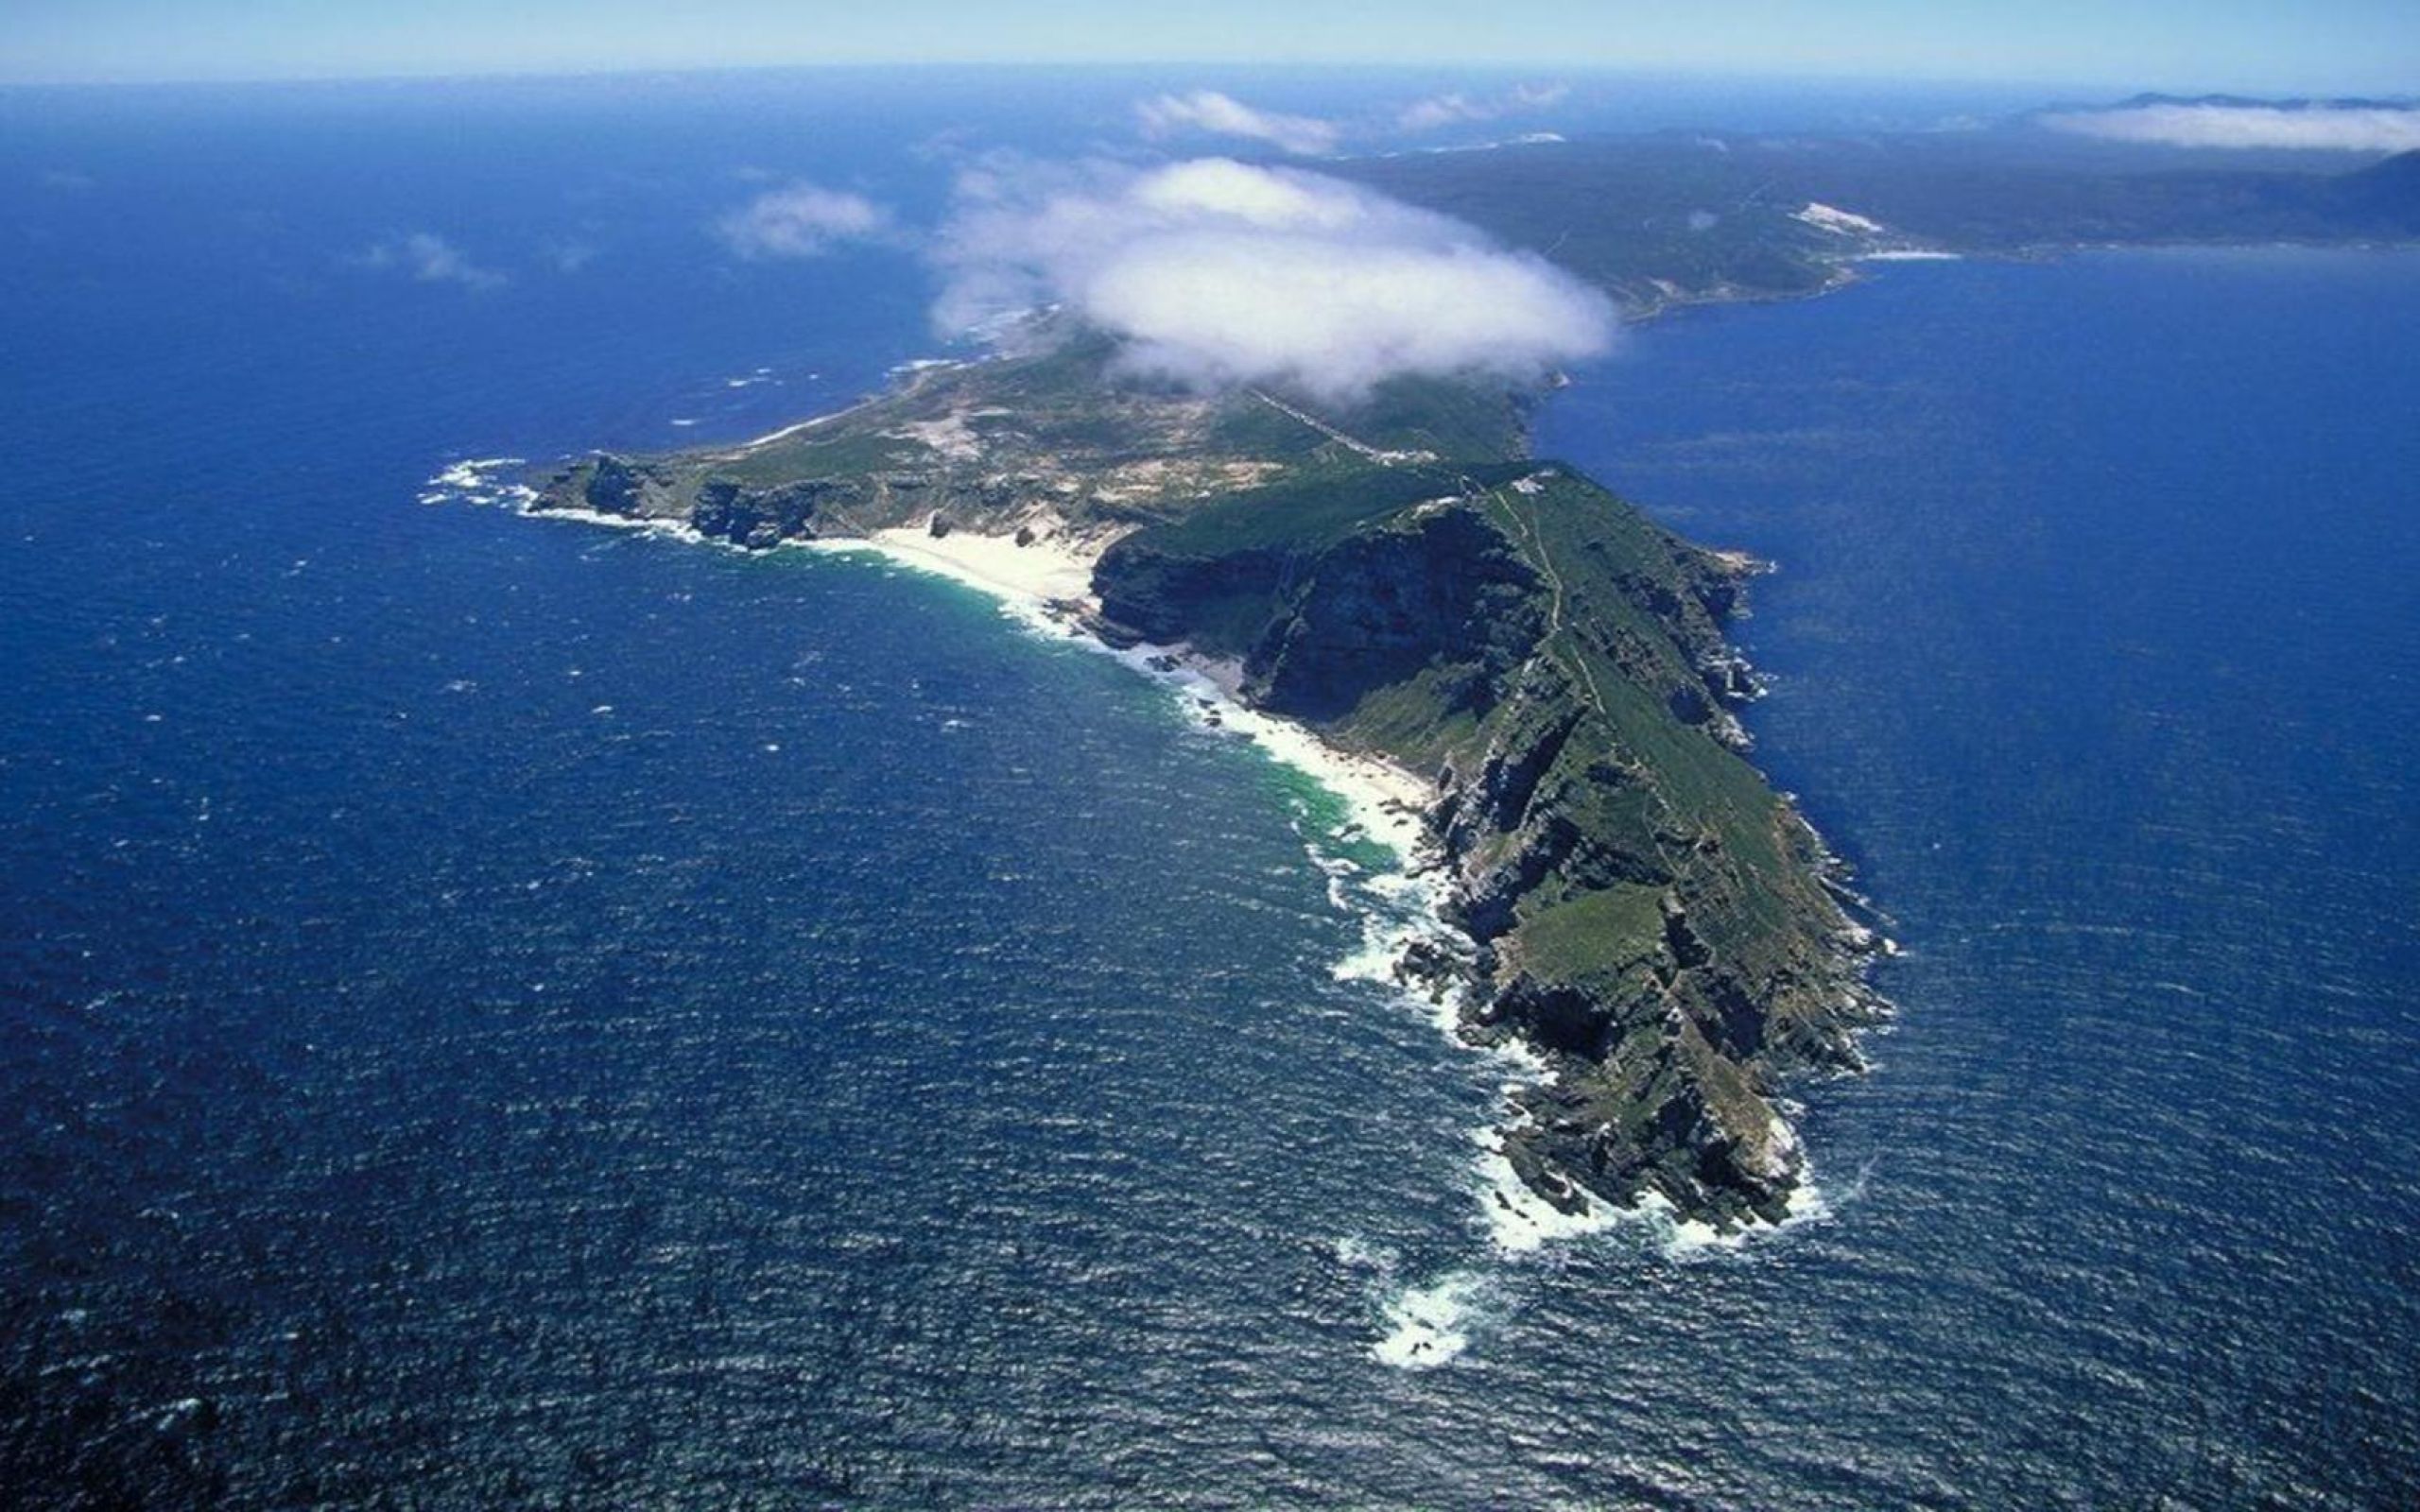 Атлантический океан самый большой остров